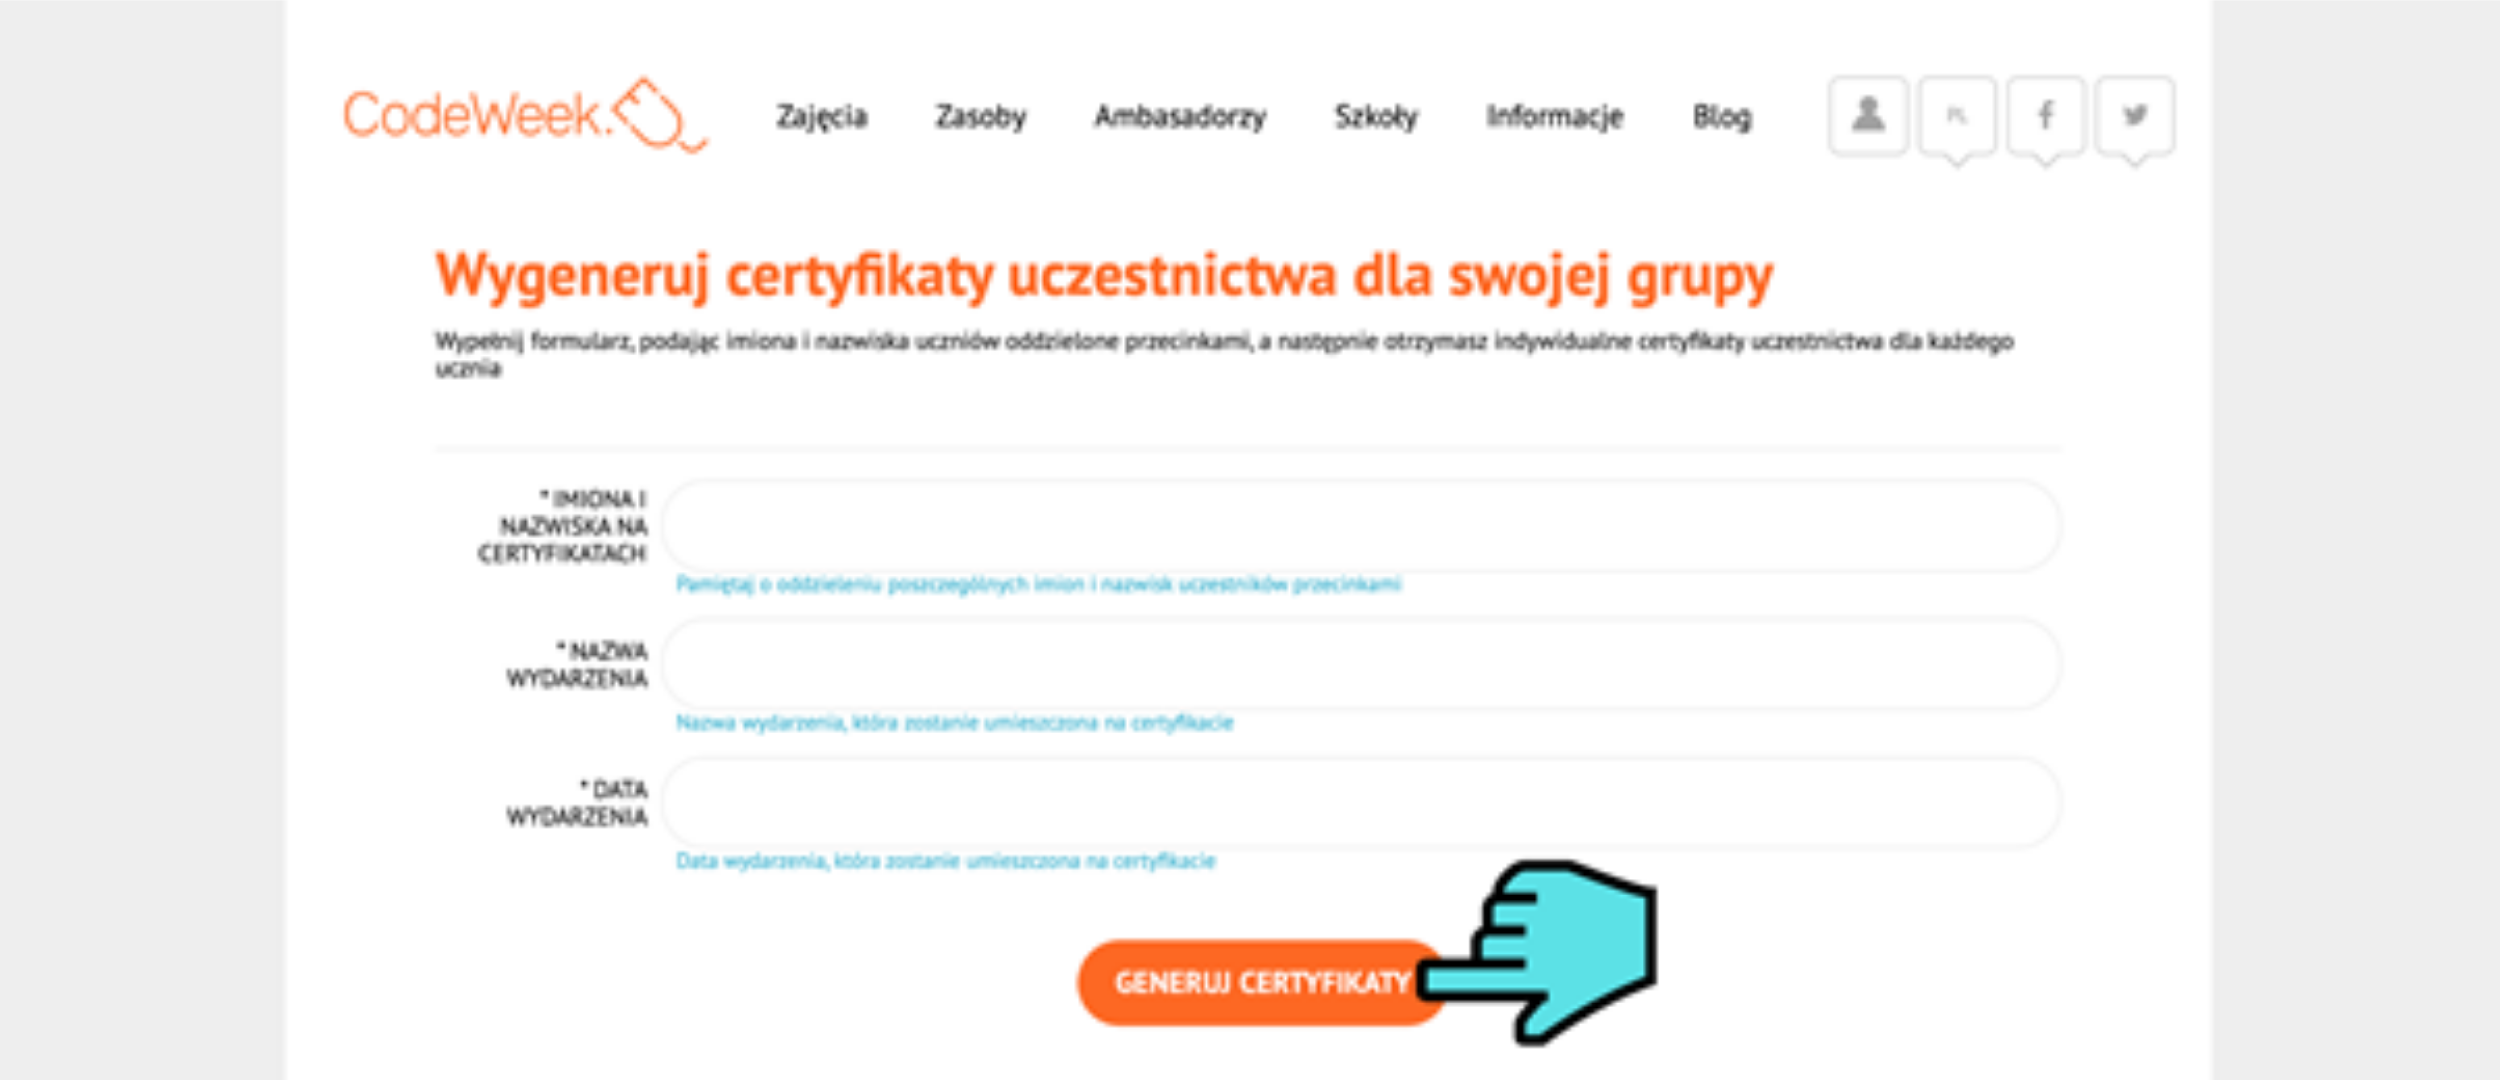 Grafika przedstawia stronę codeweek.eu po otworzeniu zakładki “Certyfikaty uczestnictwa”. Na ekranie znajduje się formularz z tytułem “Wygeneruj certyfikaty uczestnictwa dla swojej grupy”. Na końcu formularza znajduje się pomarańczowy przycisk “Generuj certyfikaty, na który wskazuje niebieski symbol kursora myszy. 